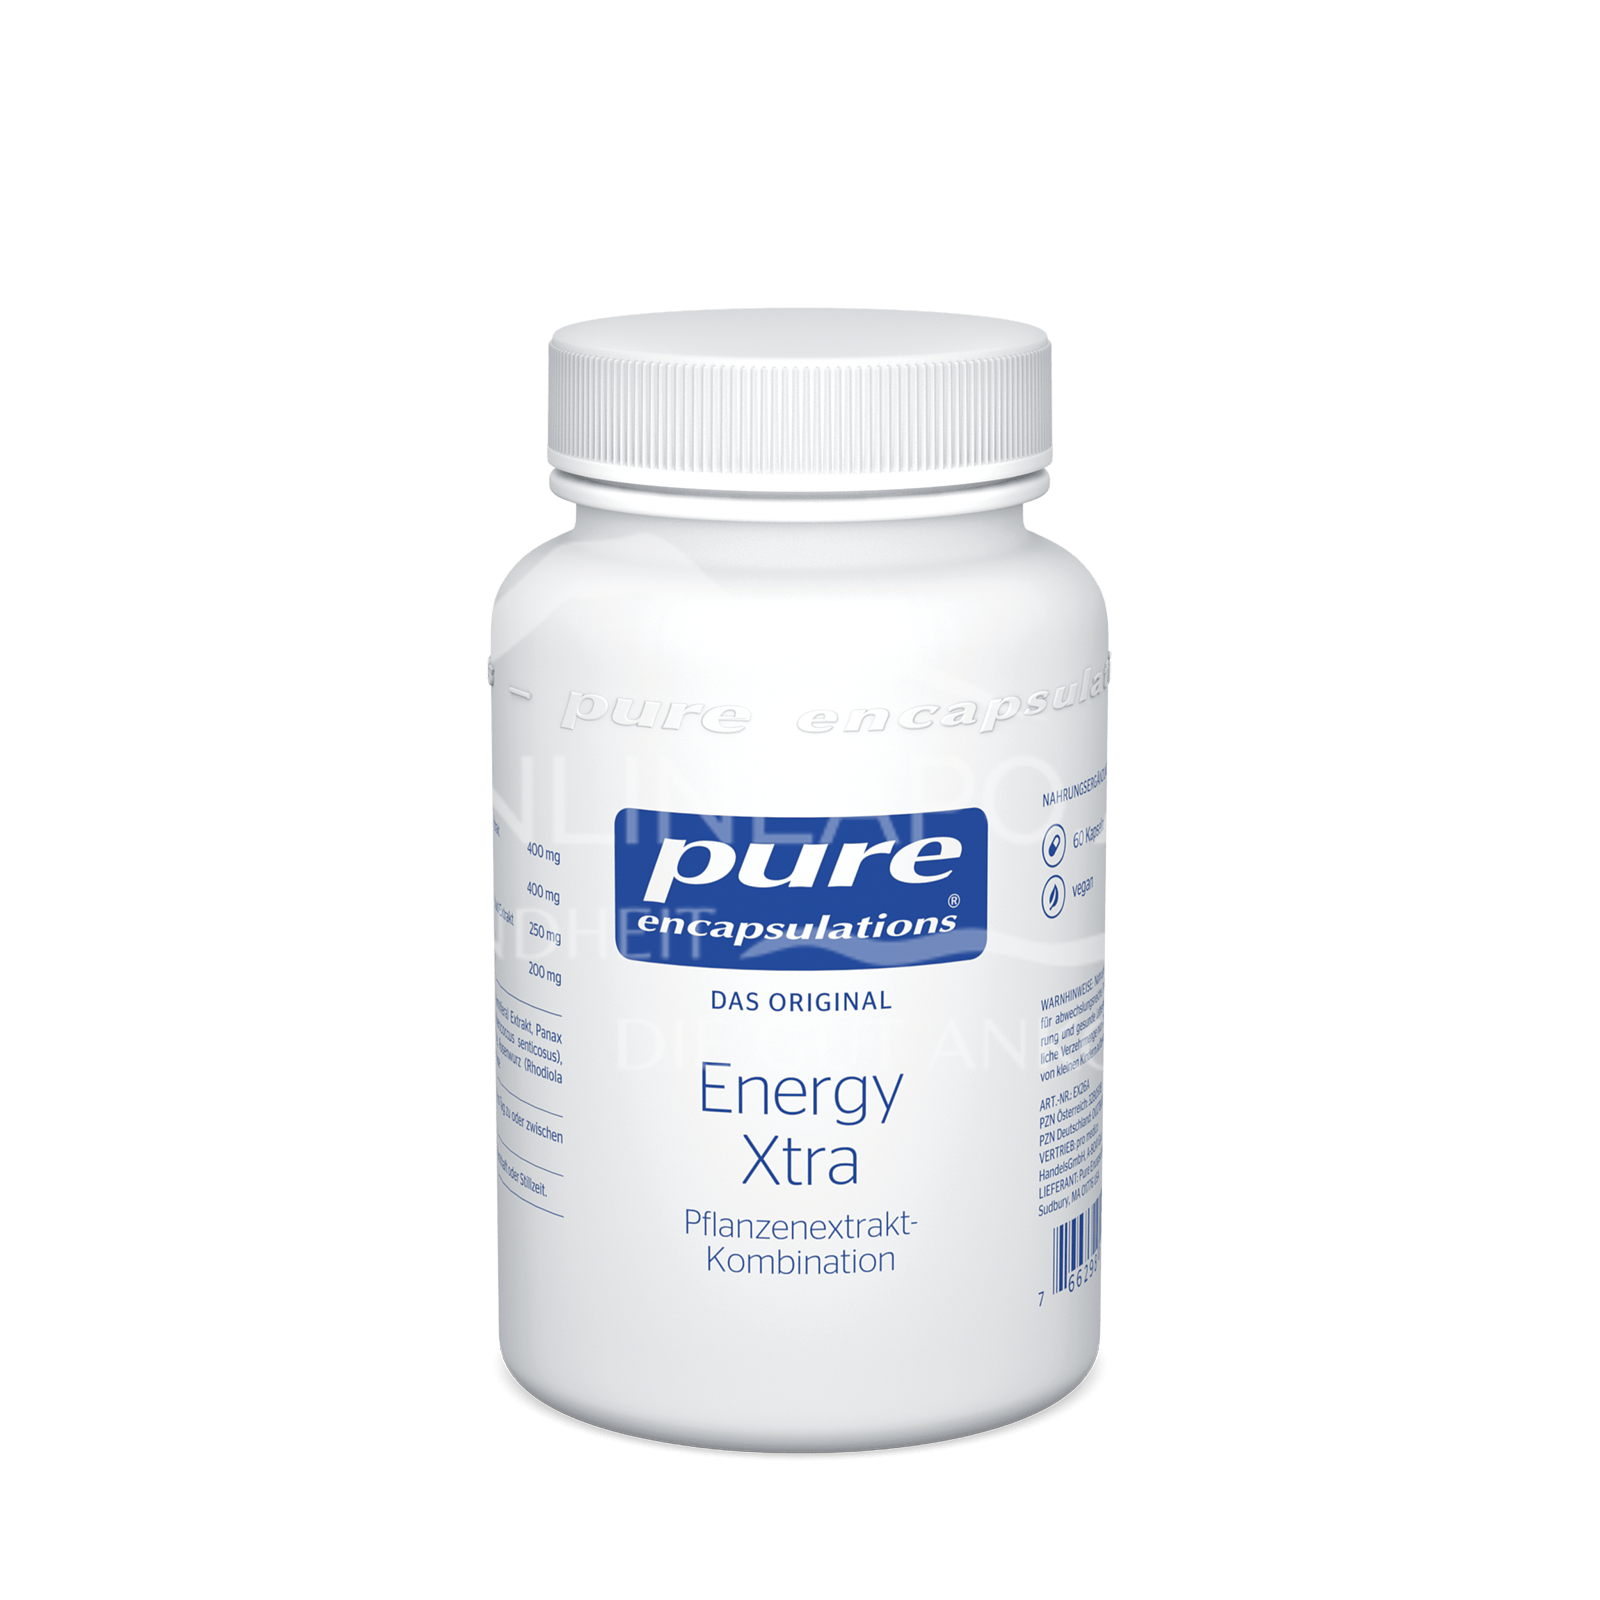 pure encapsulations® Energy Xtra